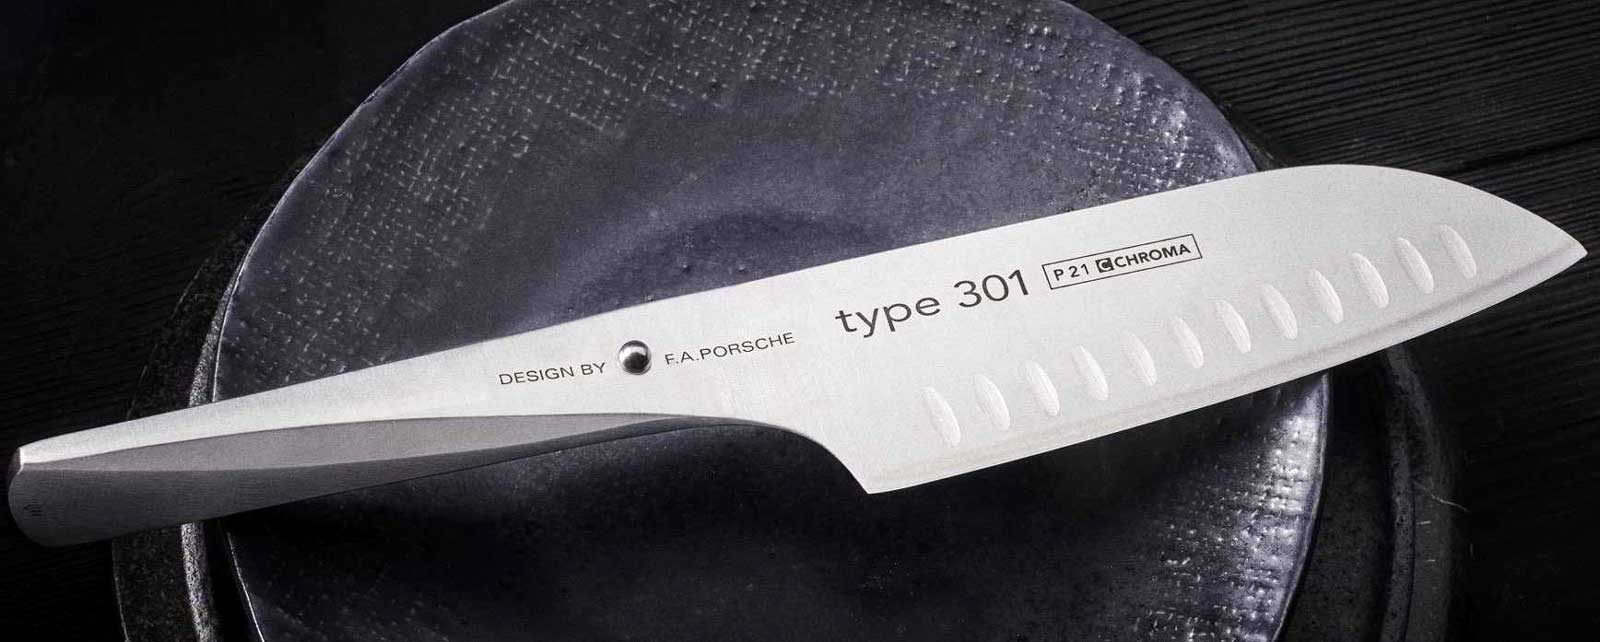 CHROMA tip 301 - Dizajn nga FA Porsche - thike kuzhine Keto thika inovative Type 301, te dizenjuara nga kompania e projektimit FA Porsche, hapin nje kapitull te ri ne zhvillimin e thikave te kuzhines.